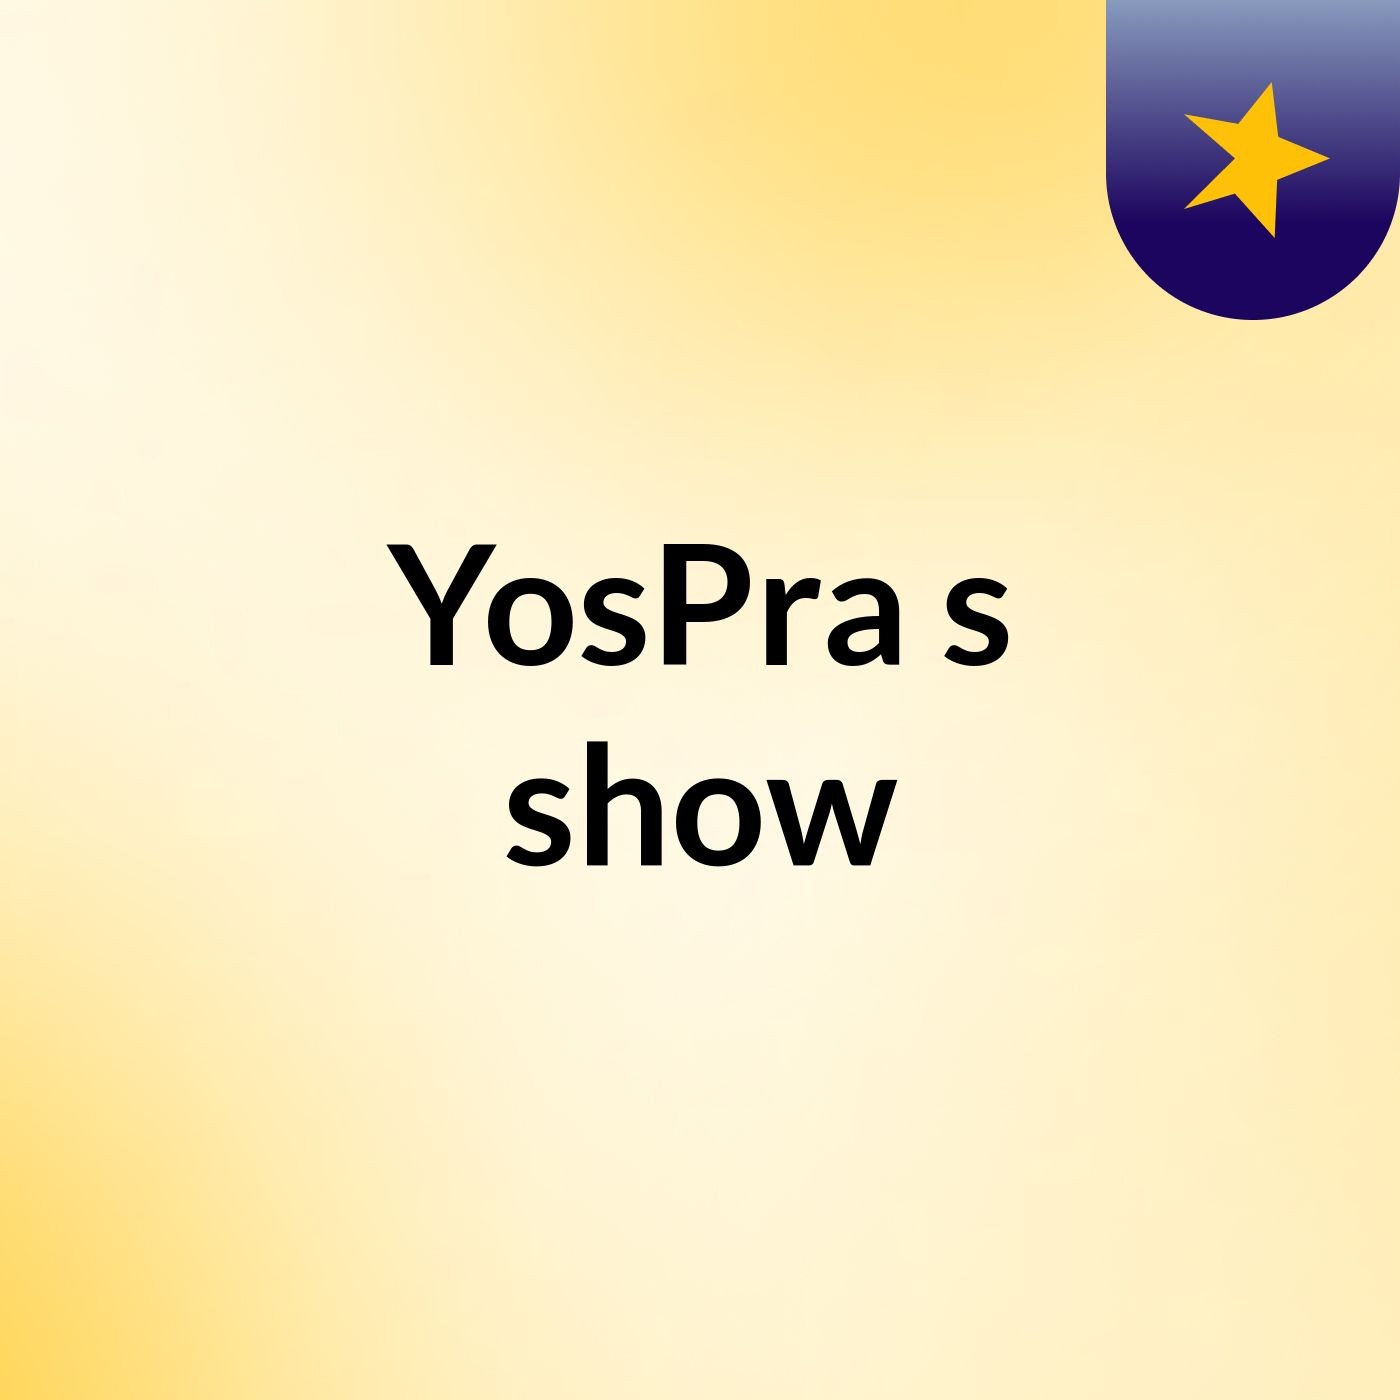 YosPra's show